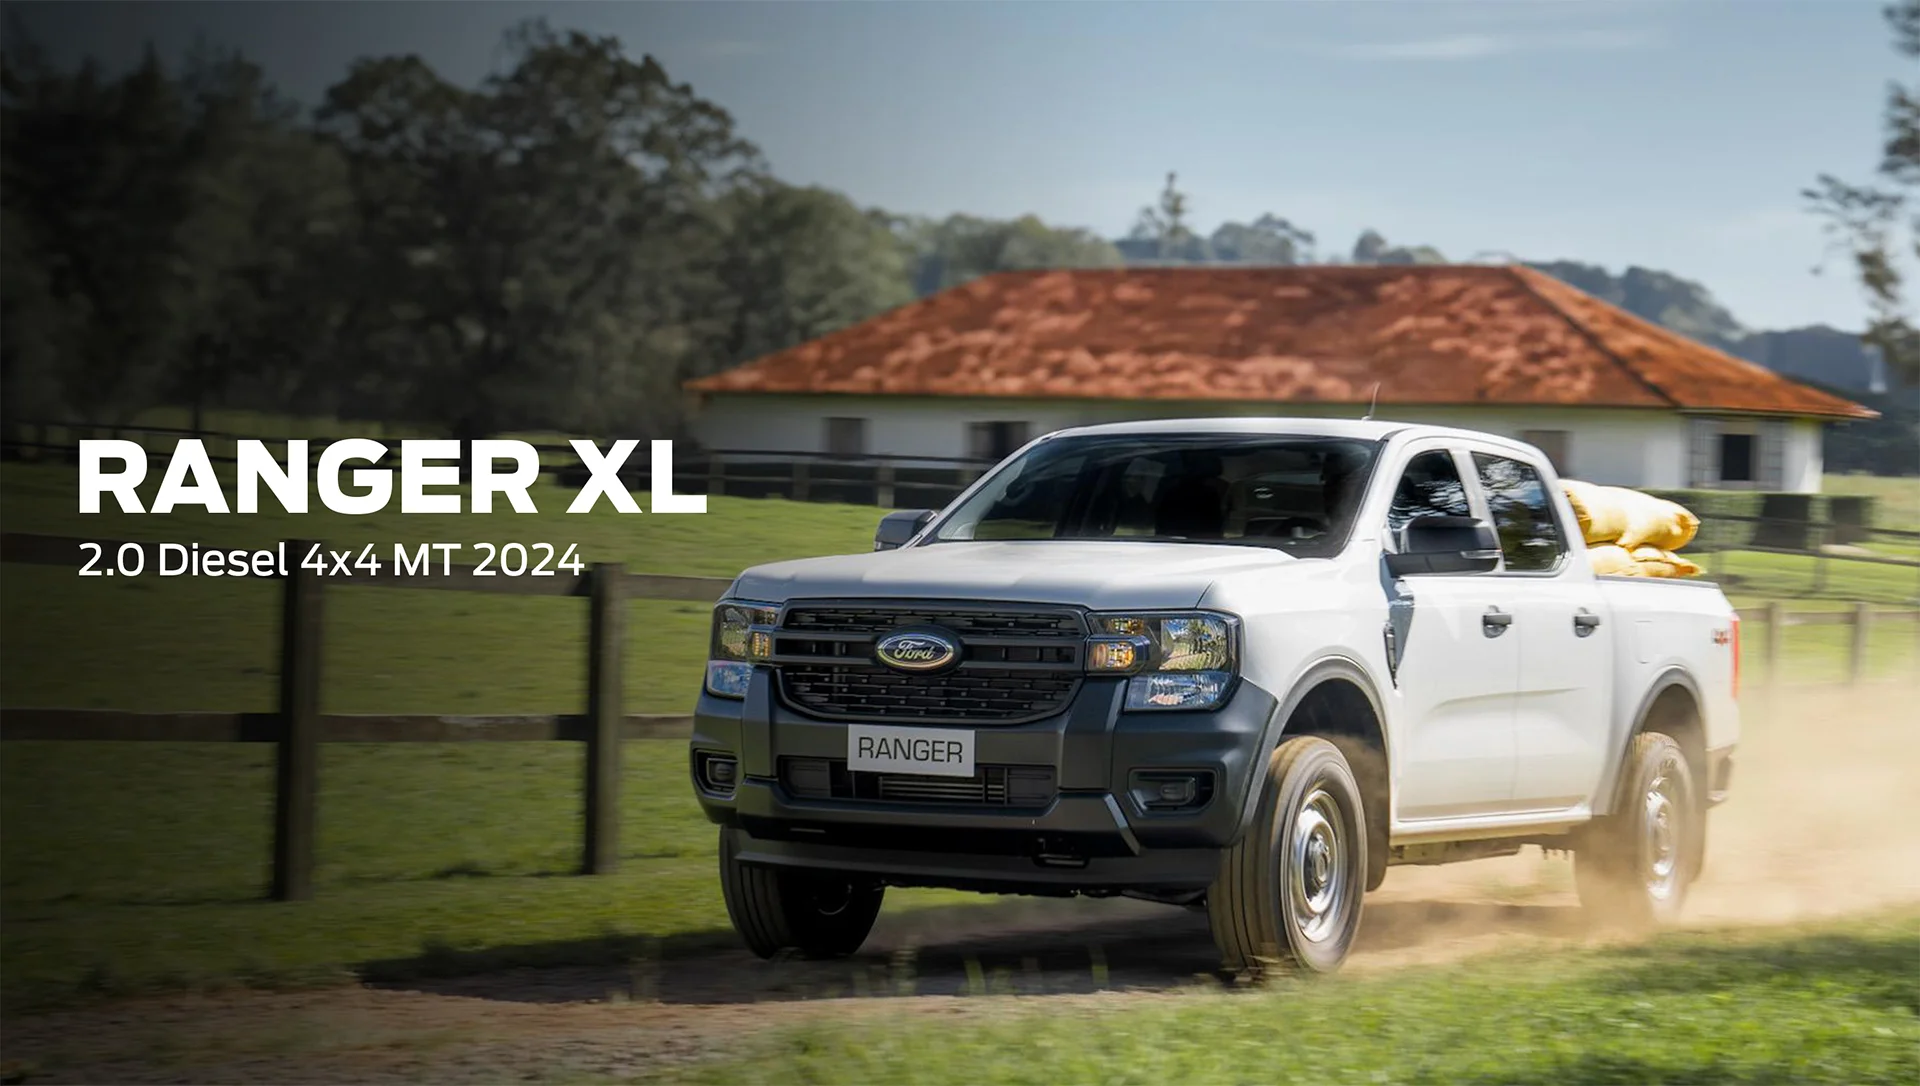 Ford Ranger XL 2.0 Diesel 4x4 MT 2024